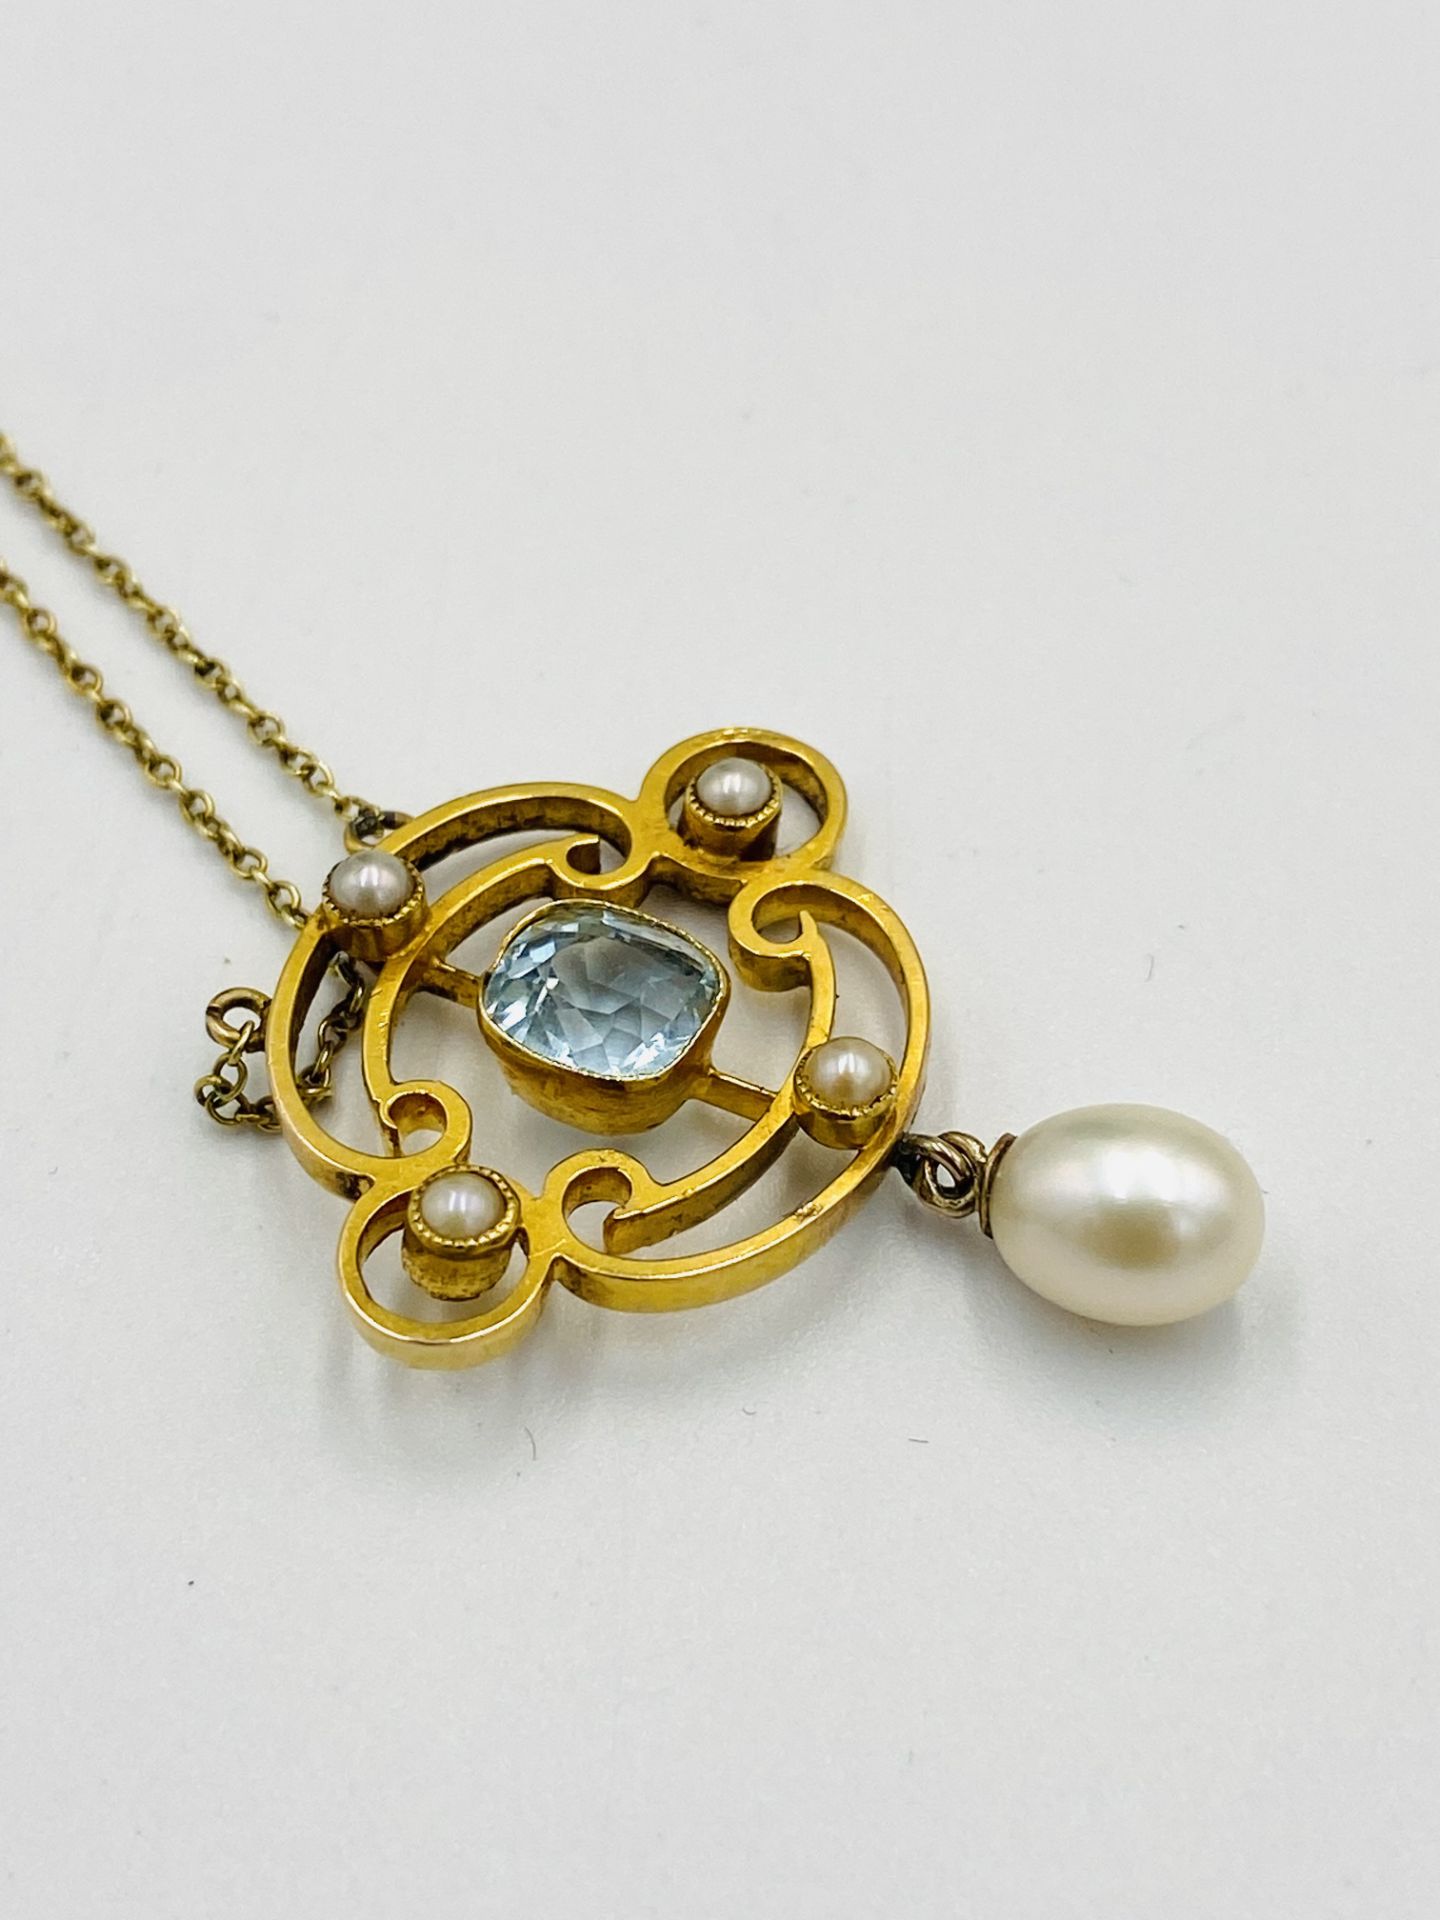 15ct gold pendant necklace - Bild 2 aus 4